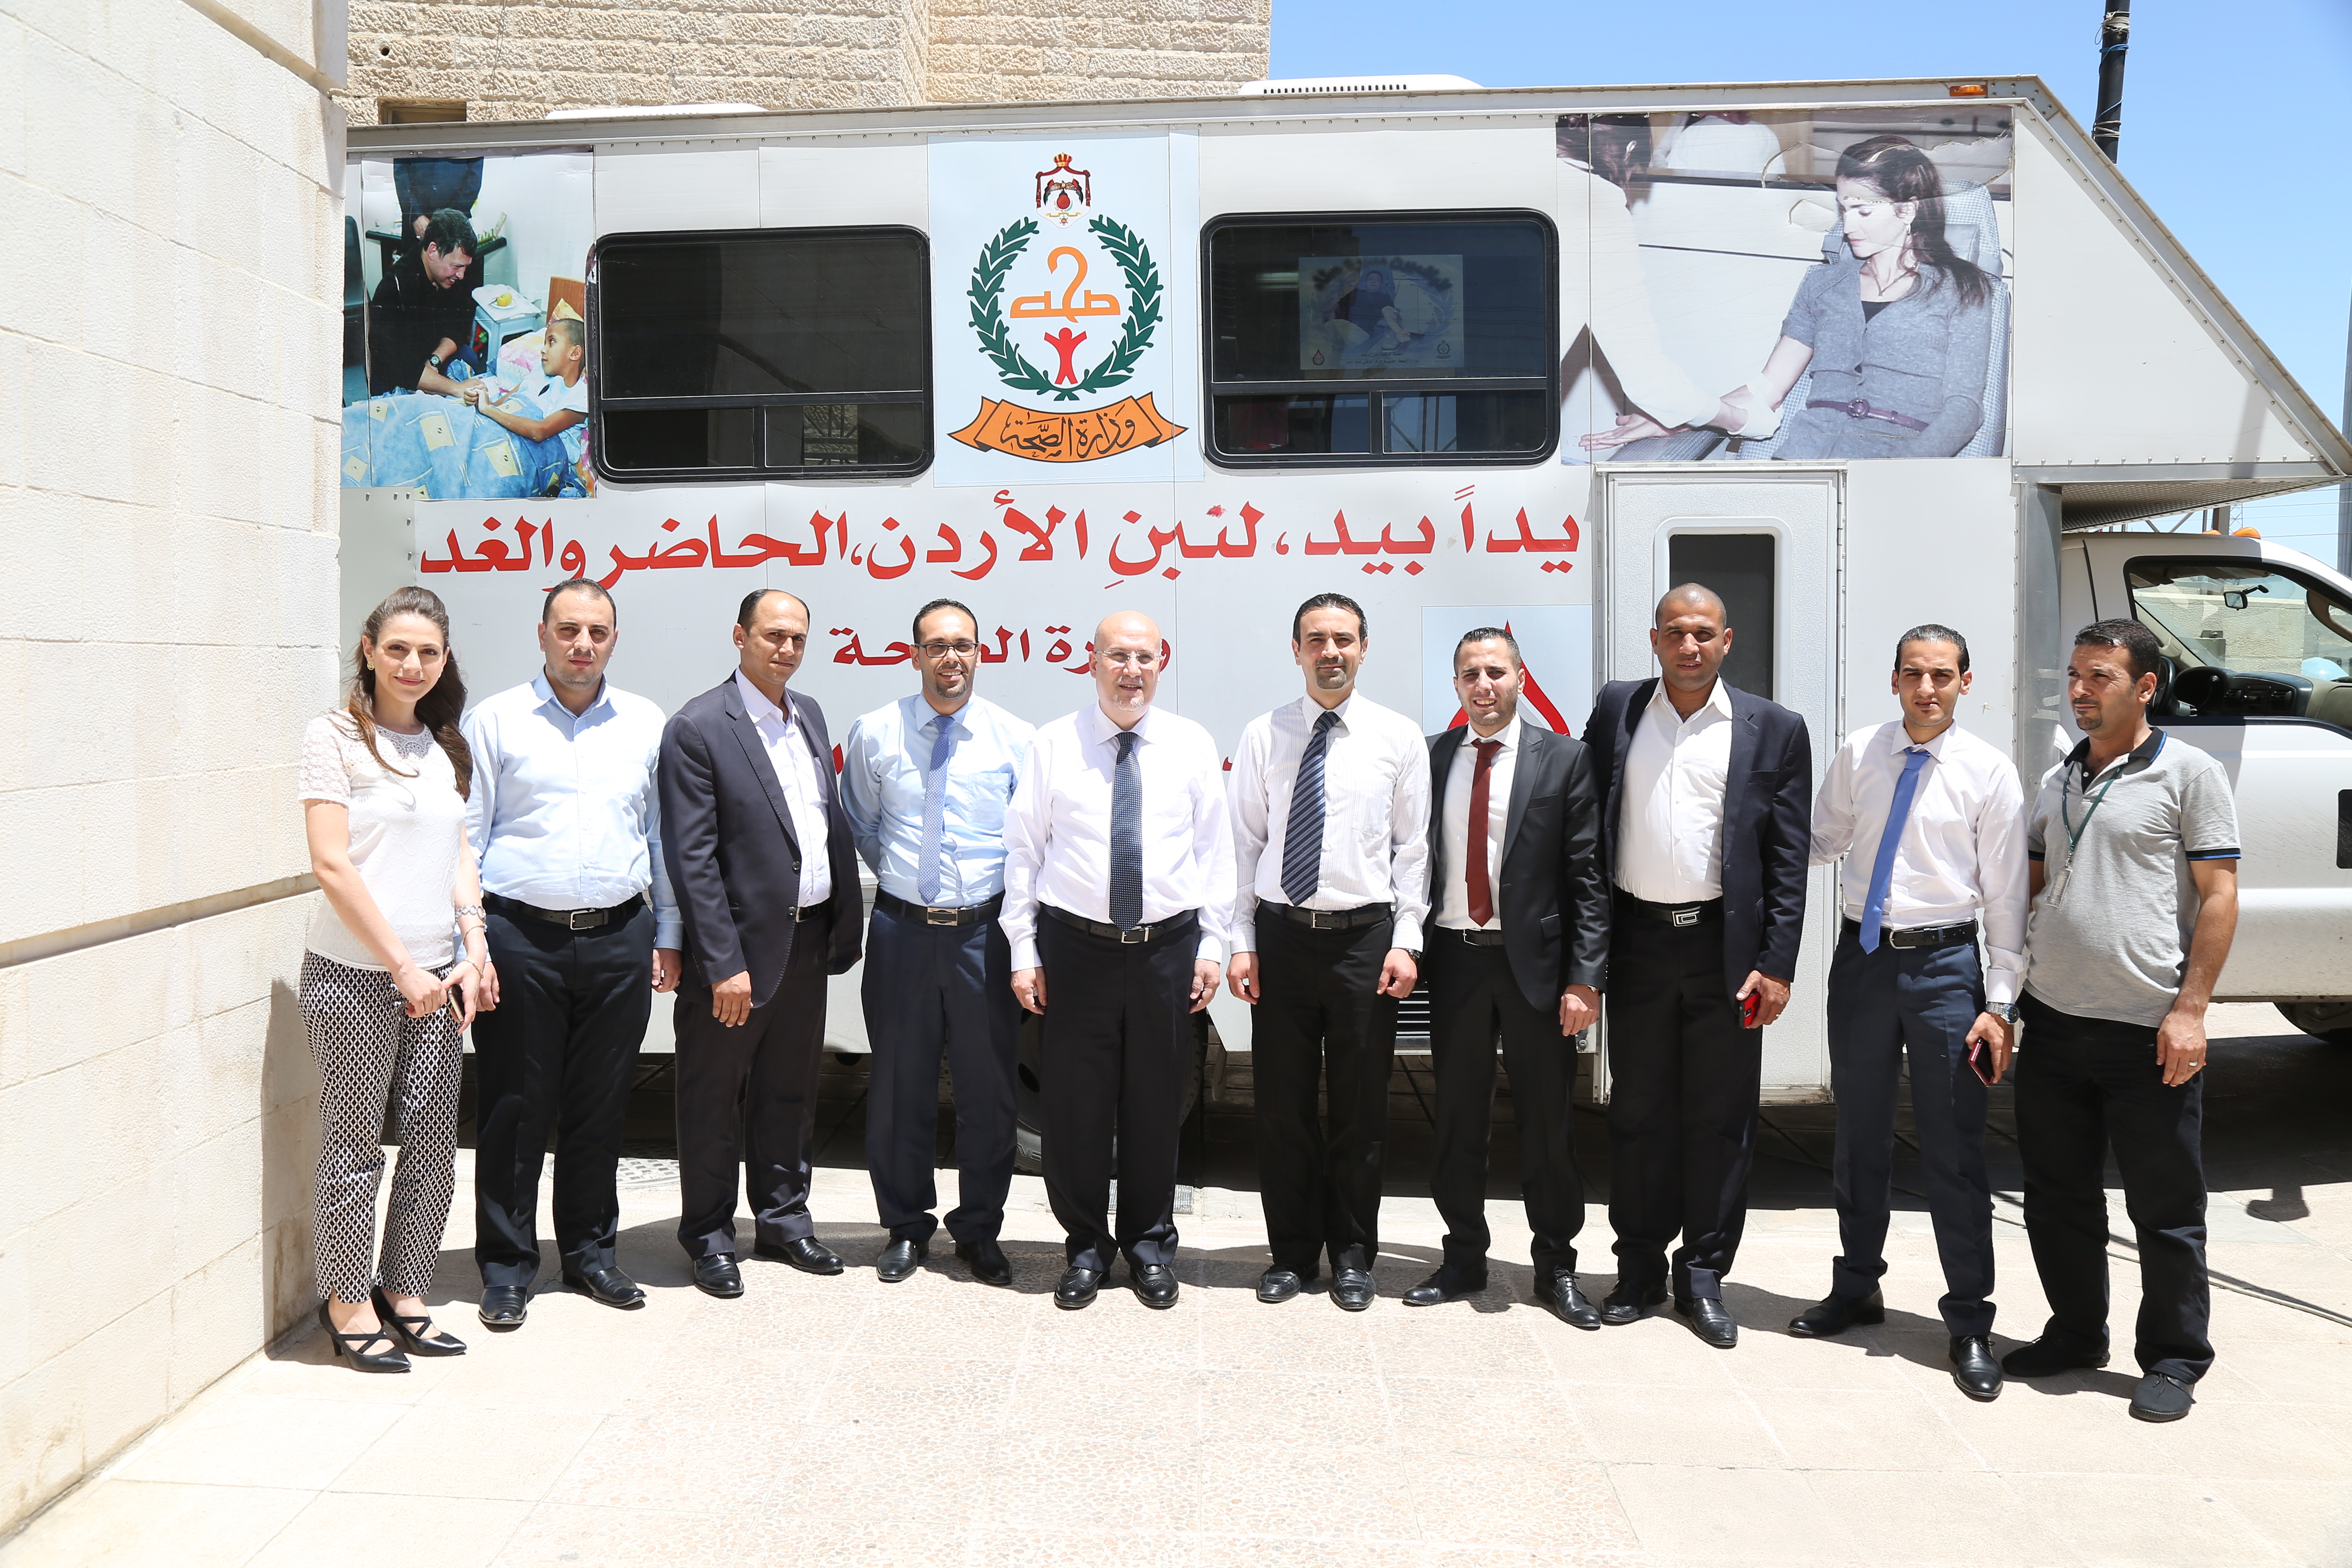 البنك الأهلي الأردني ينظم حملة للتبرع بالدم "كلنا أهل، دمنا واحد" بالتعاون مع بنك الدم الوطني